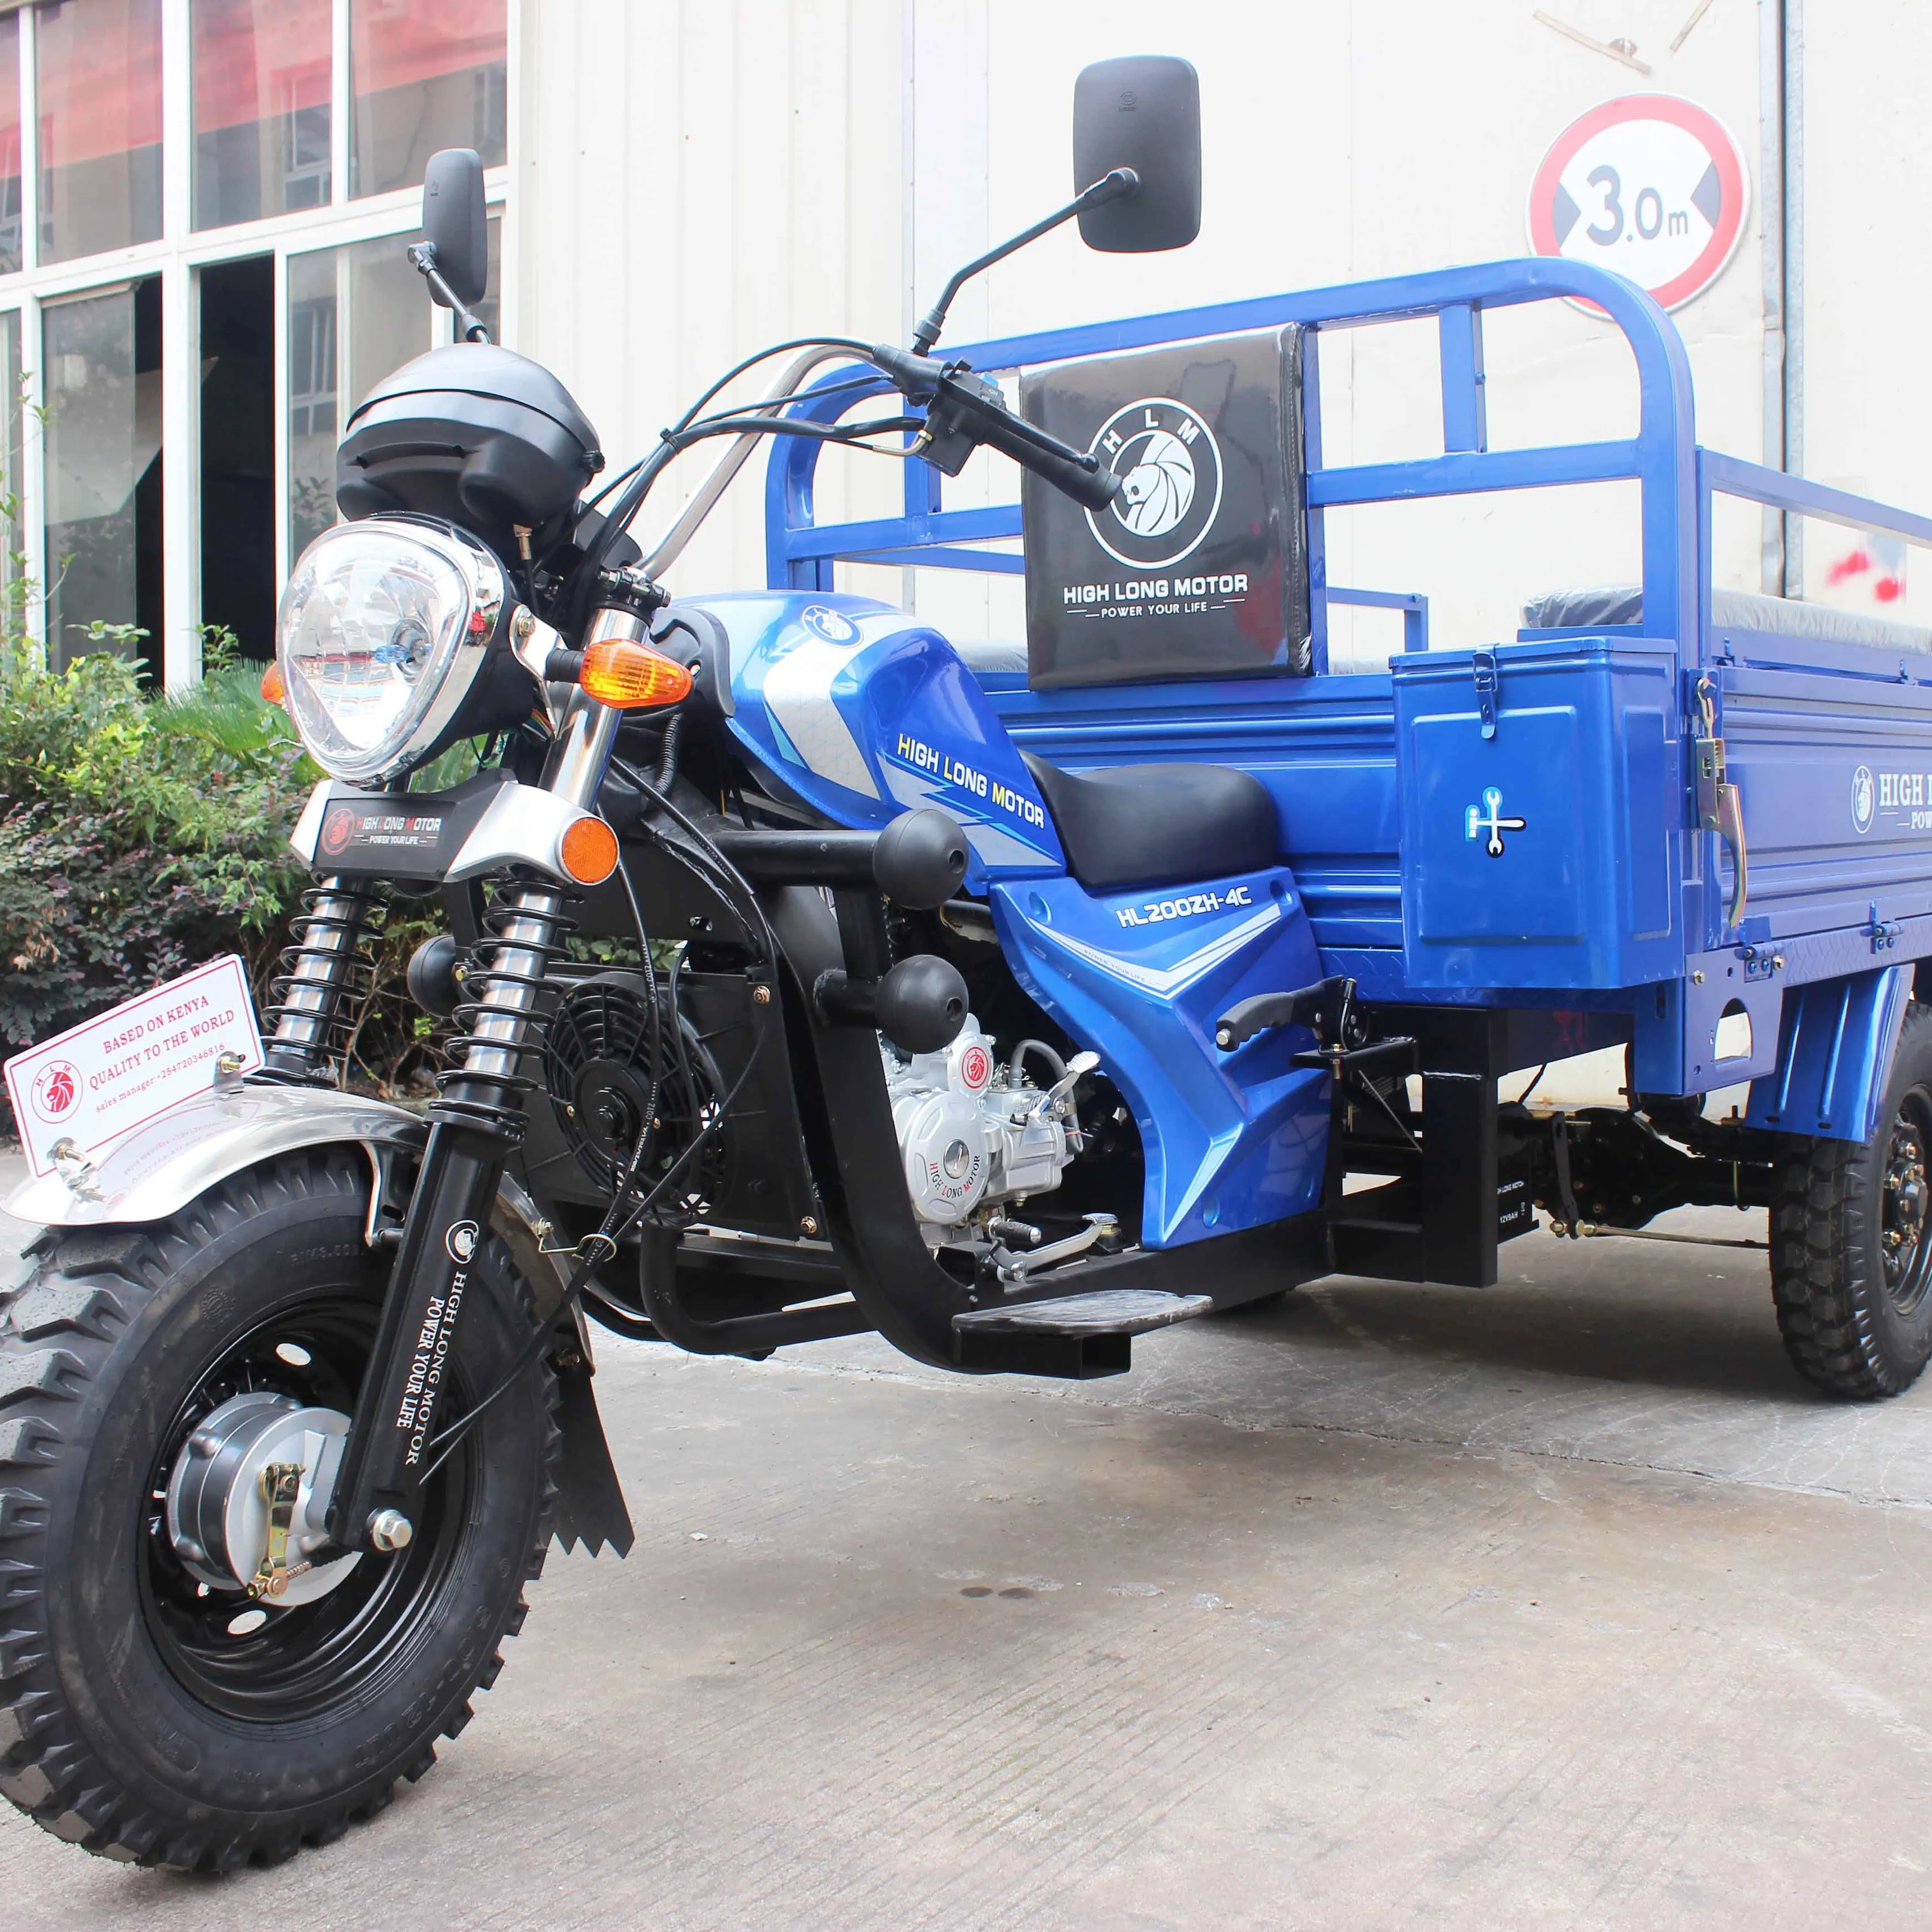 Caja de carga superior 150CC Triciclo de carga Eje trasero del coche y caja de herramientas multifuncional rueda motocicleta 200cc moto motorizada carga